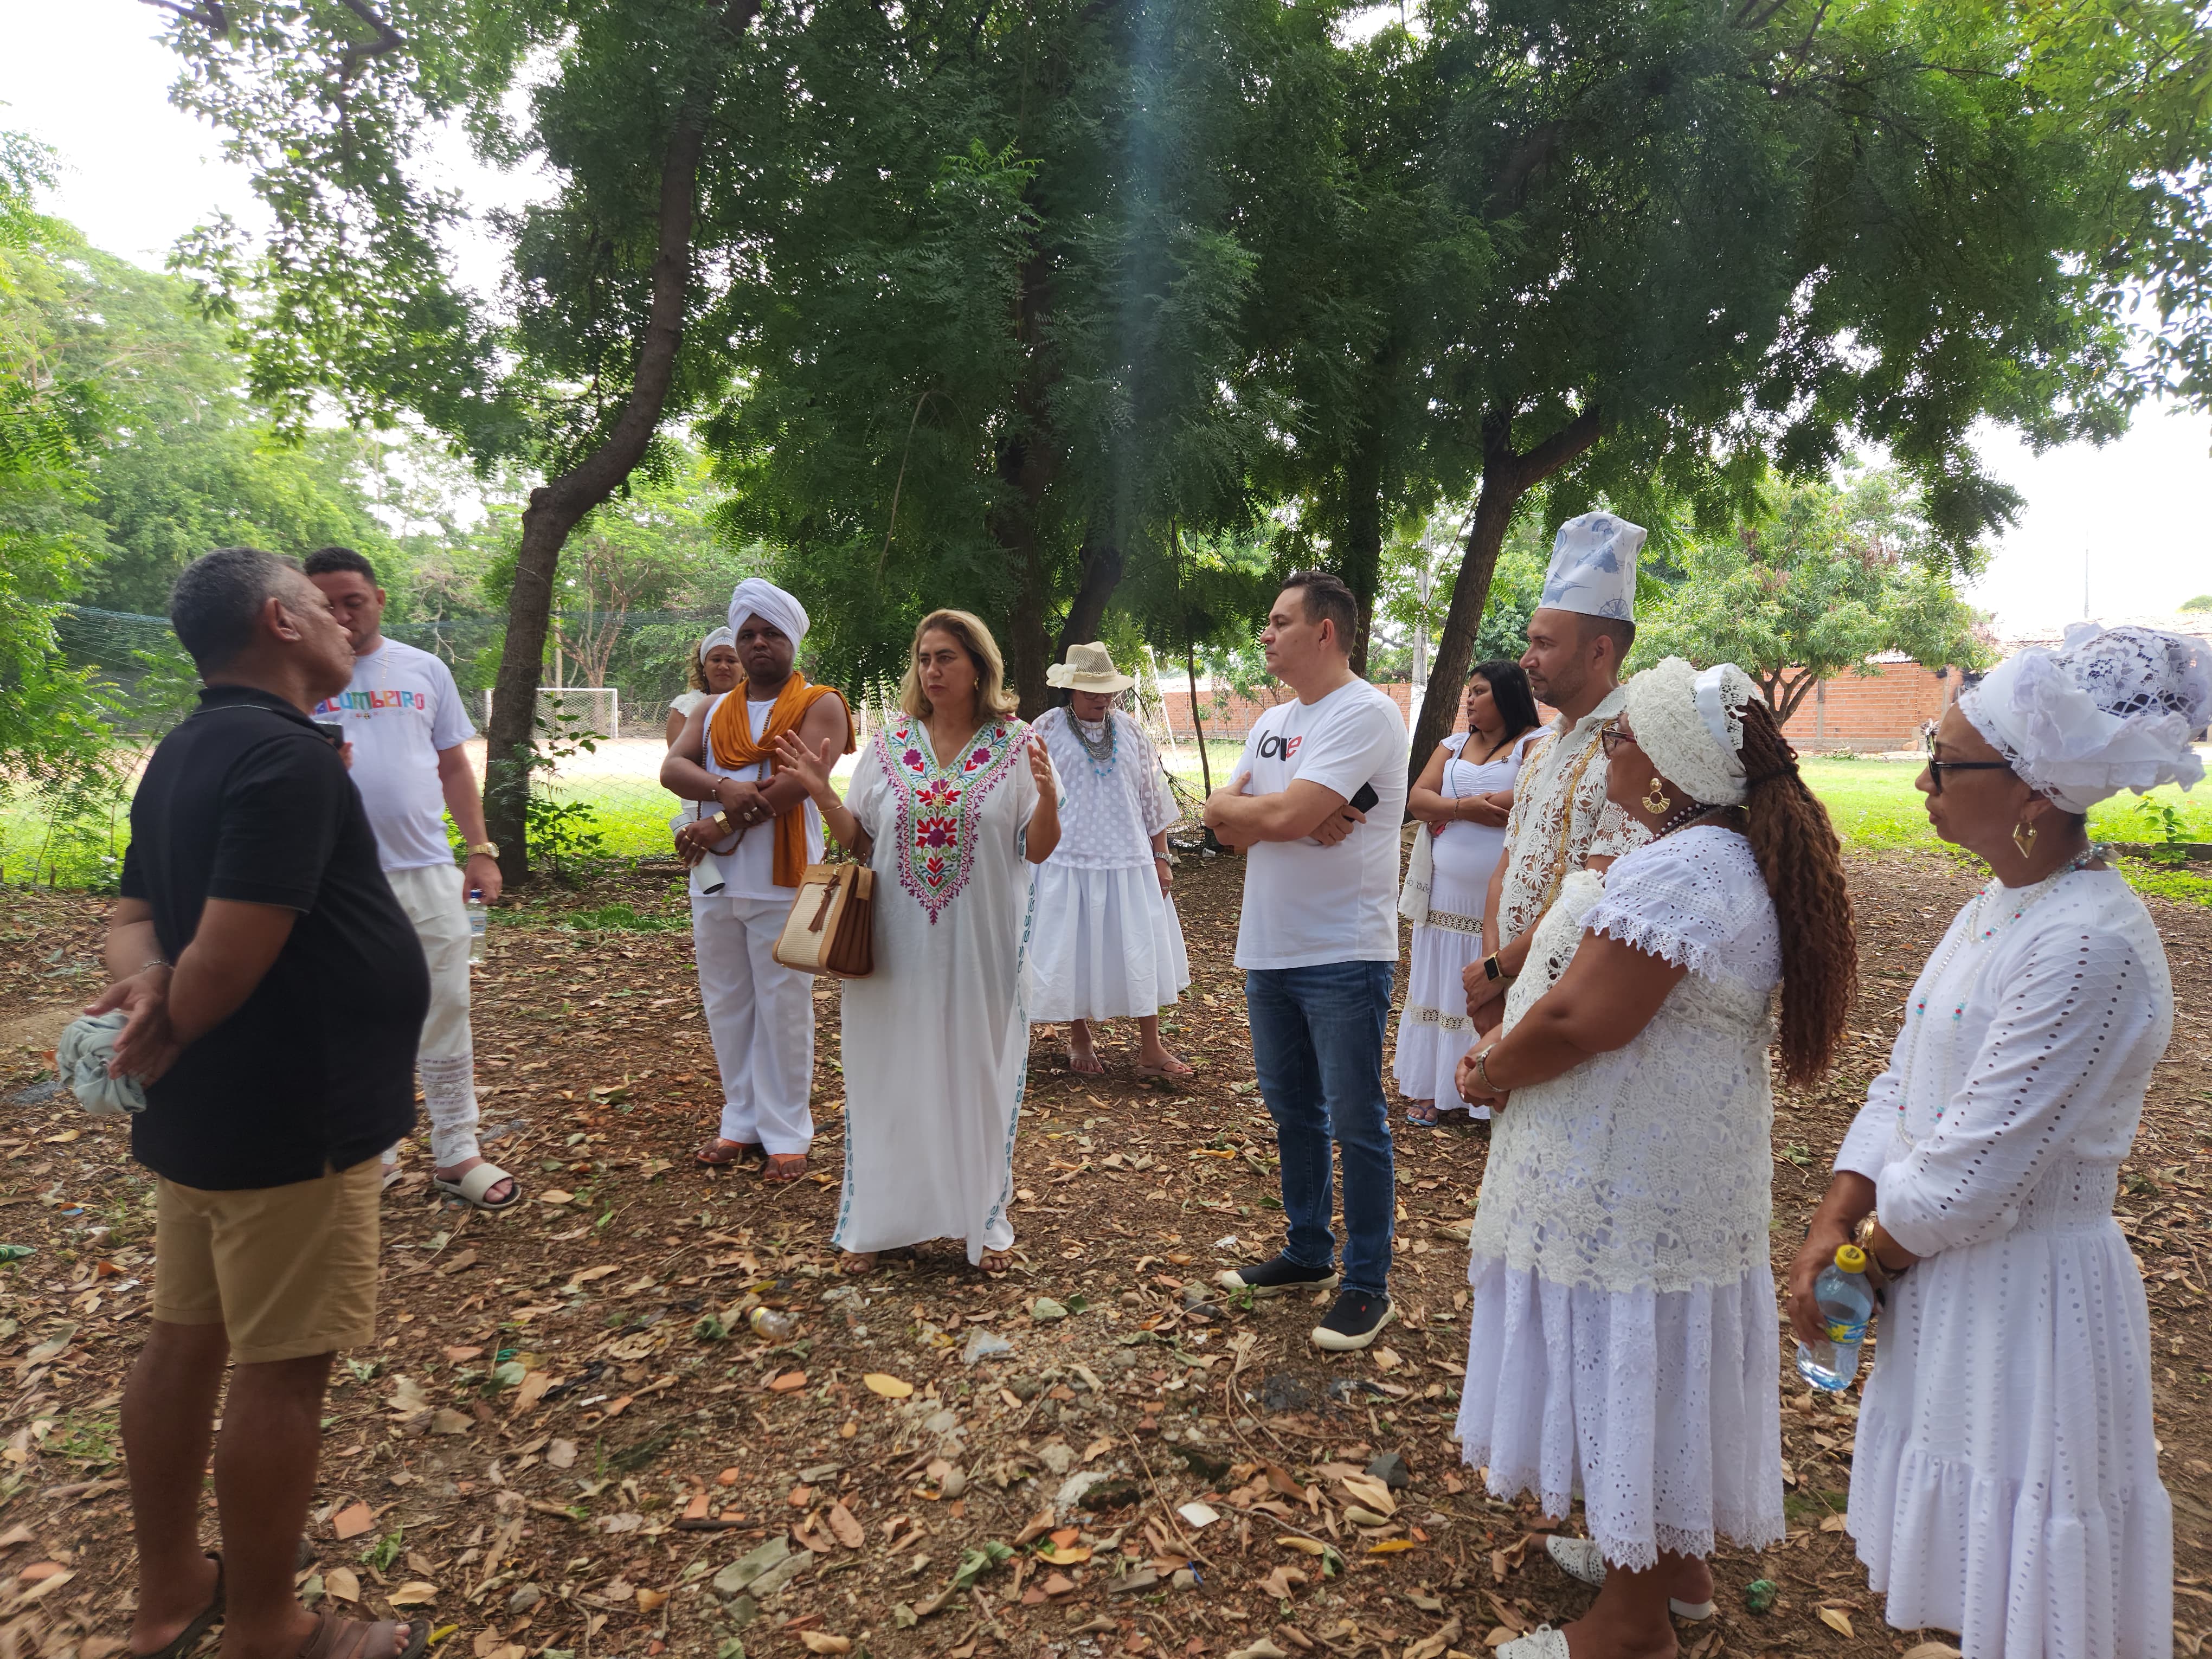 Povo do Axé do Piauí faz arrecadação para monumento de Iemanjá e Oxum